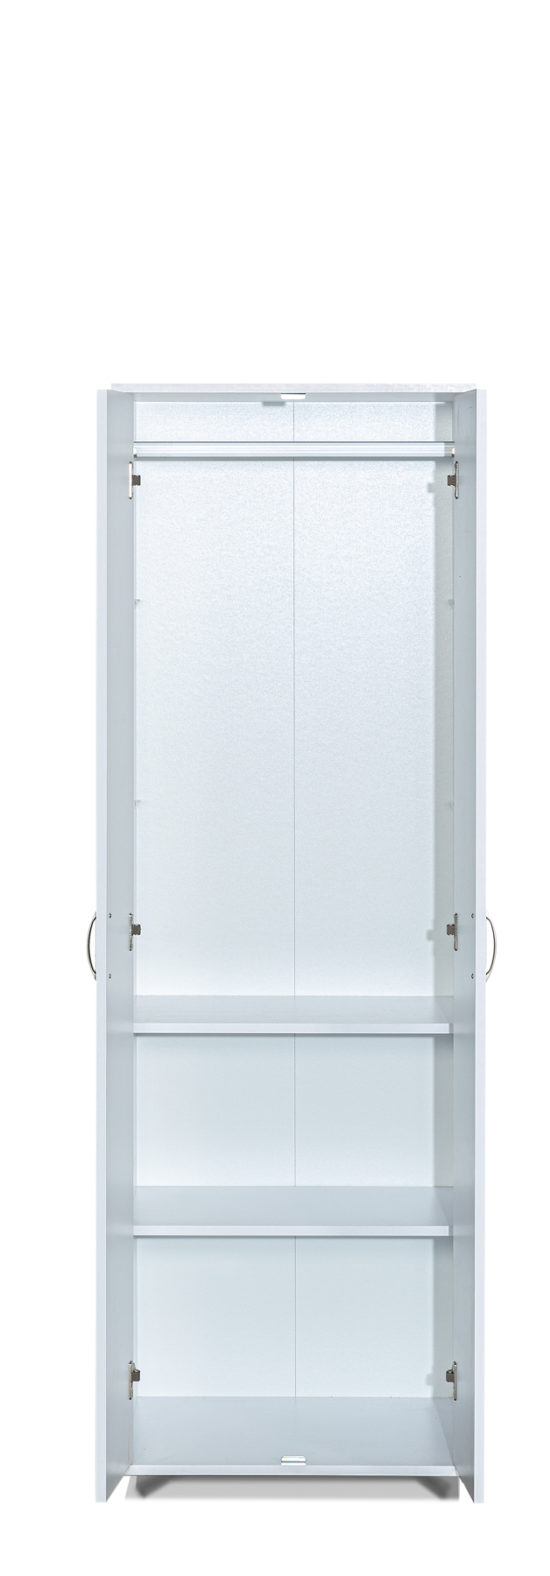 ארון 2 דלתות  משולב תלייה דגם 602